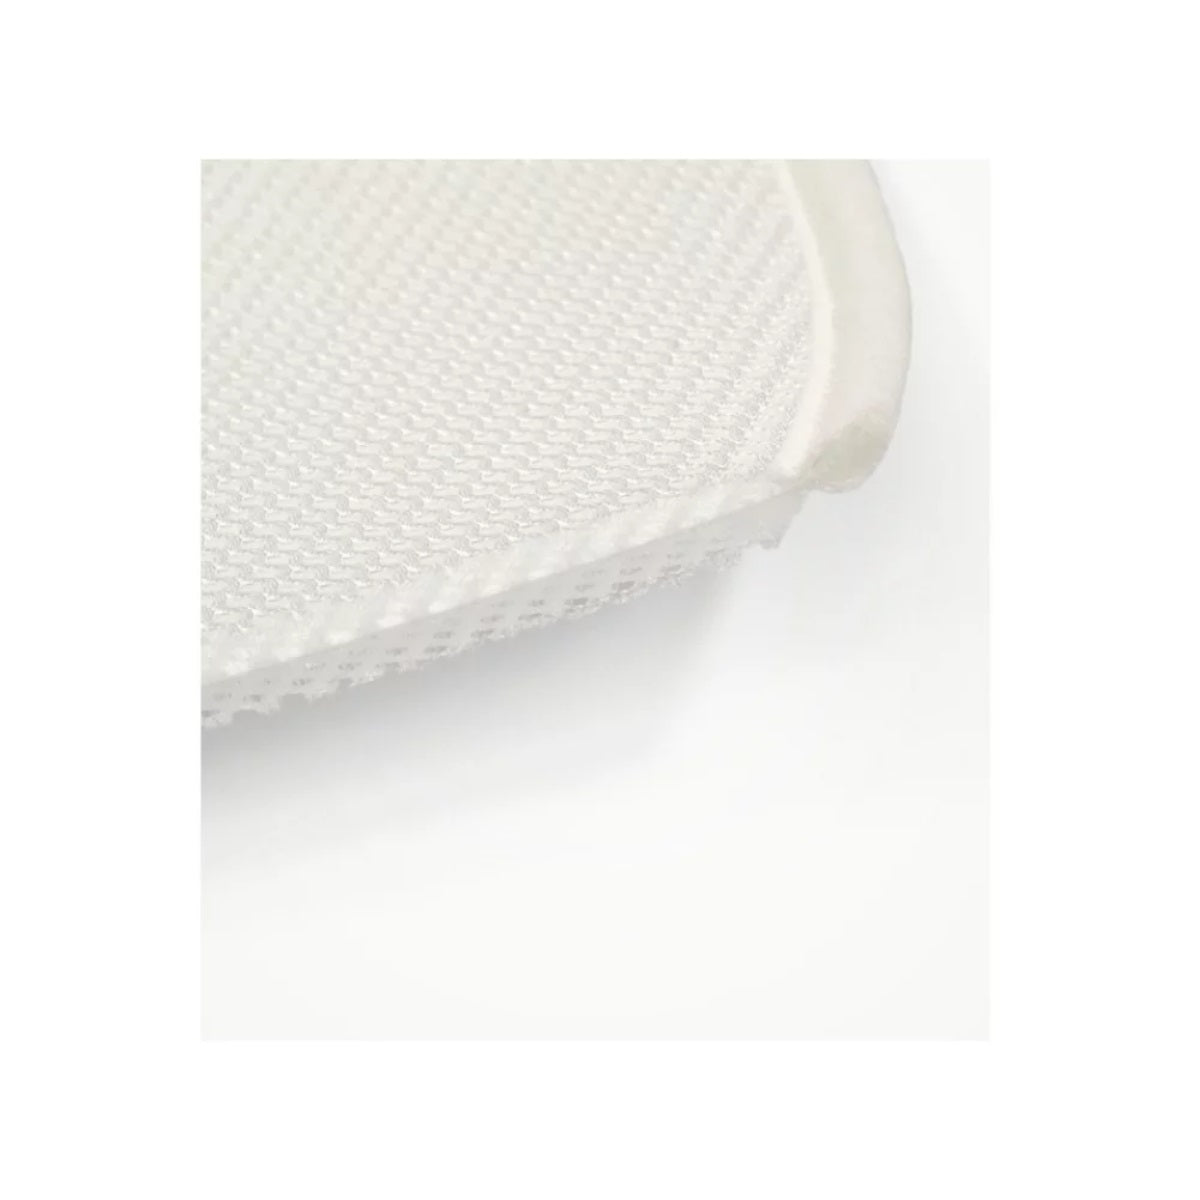 Stokke Sleepi Mini V3 Mattress Protection Sheet - White